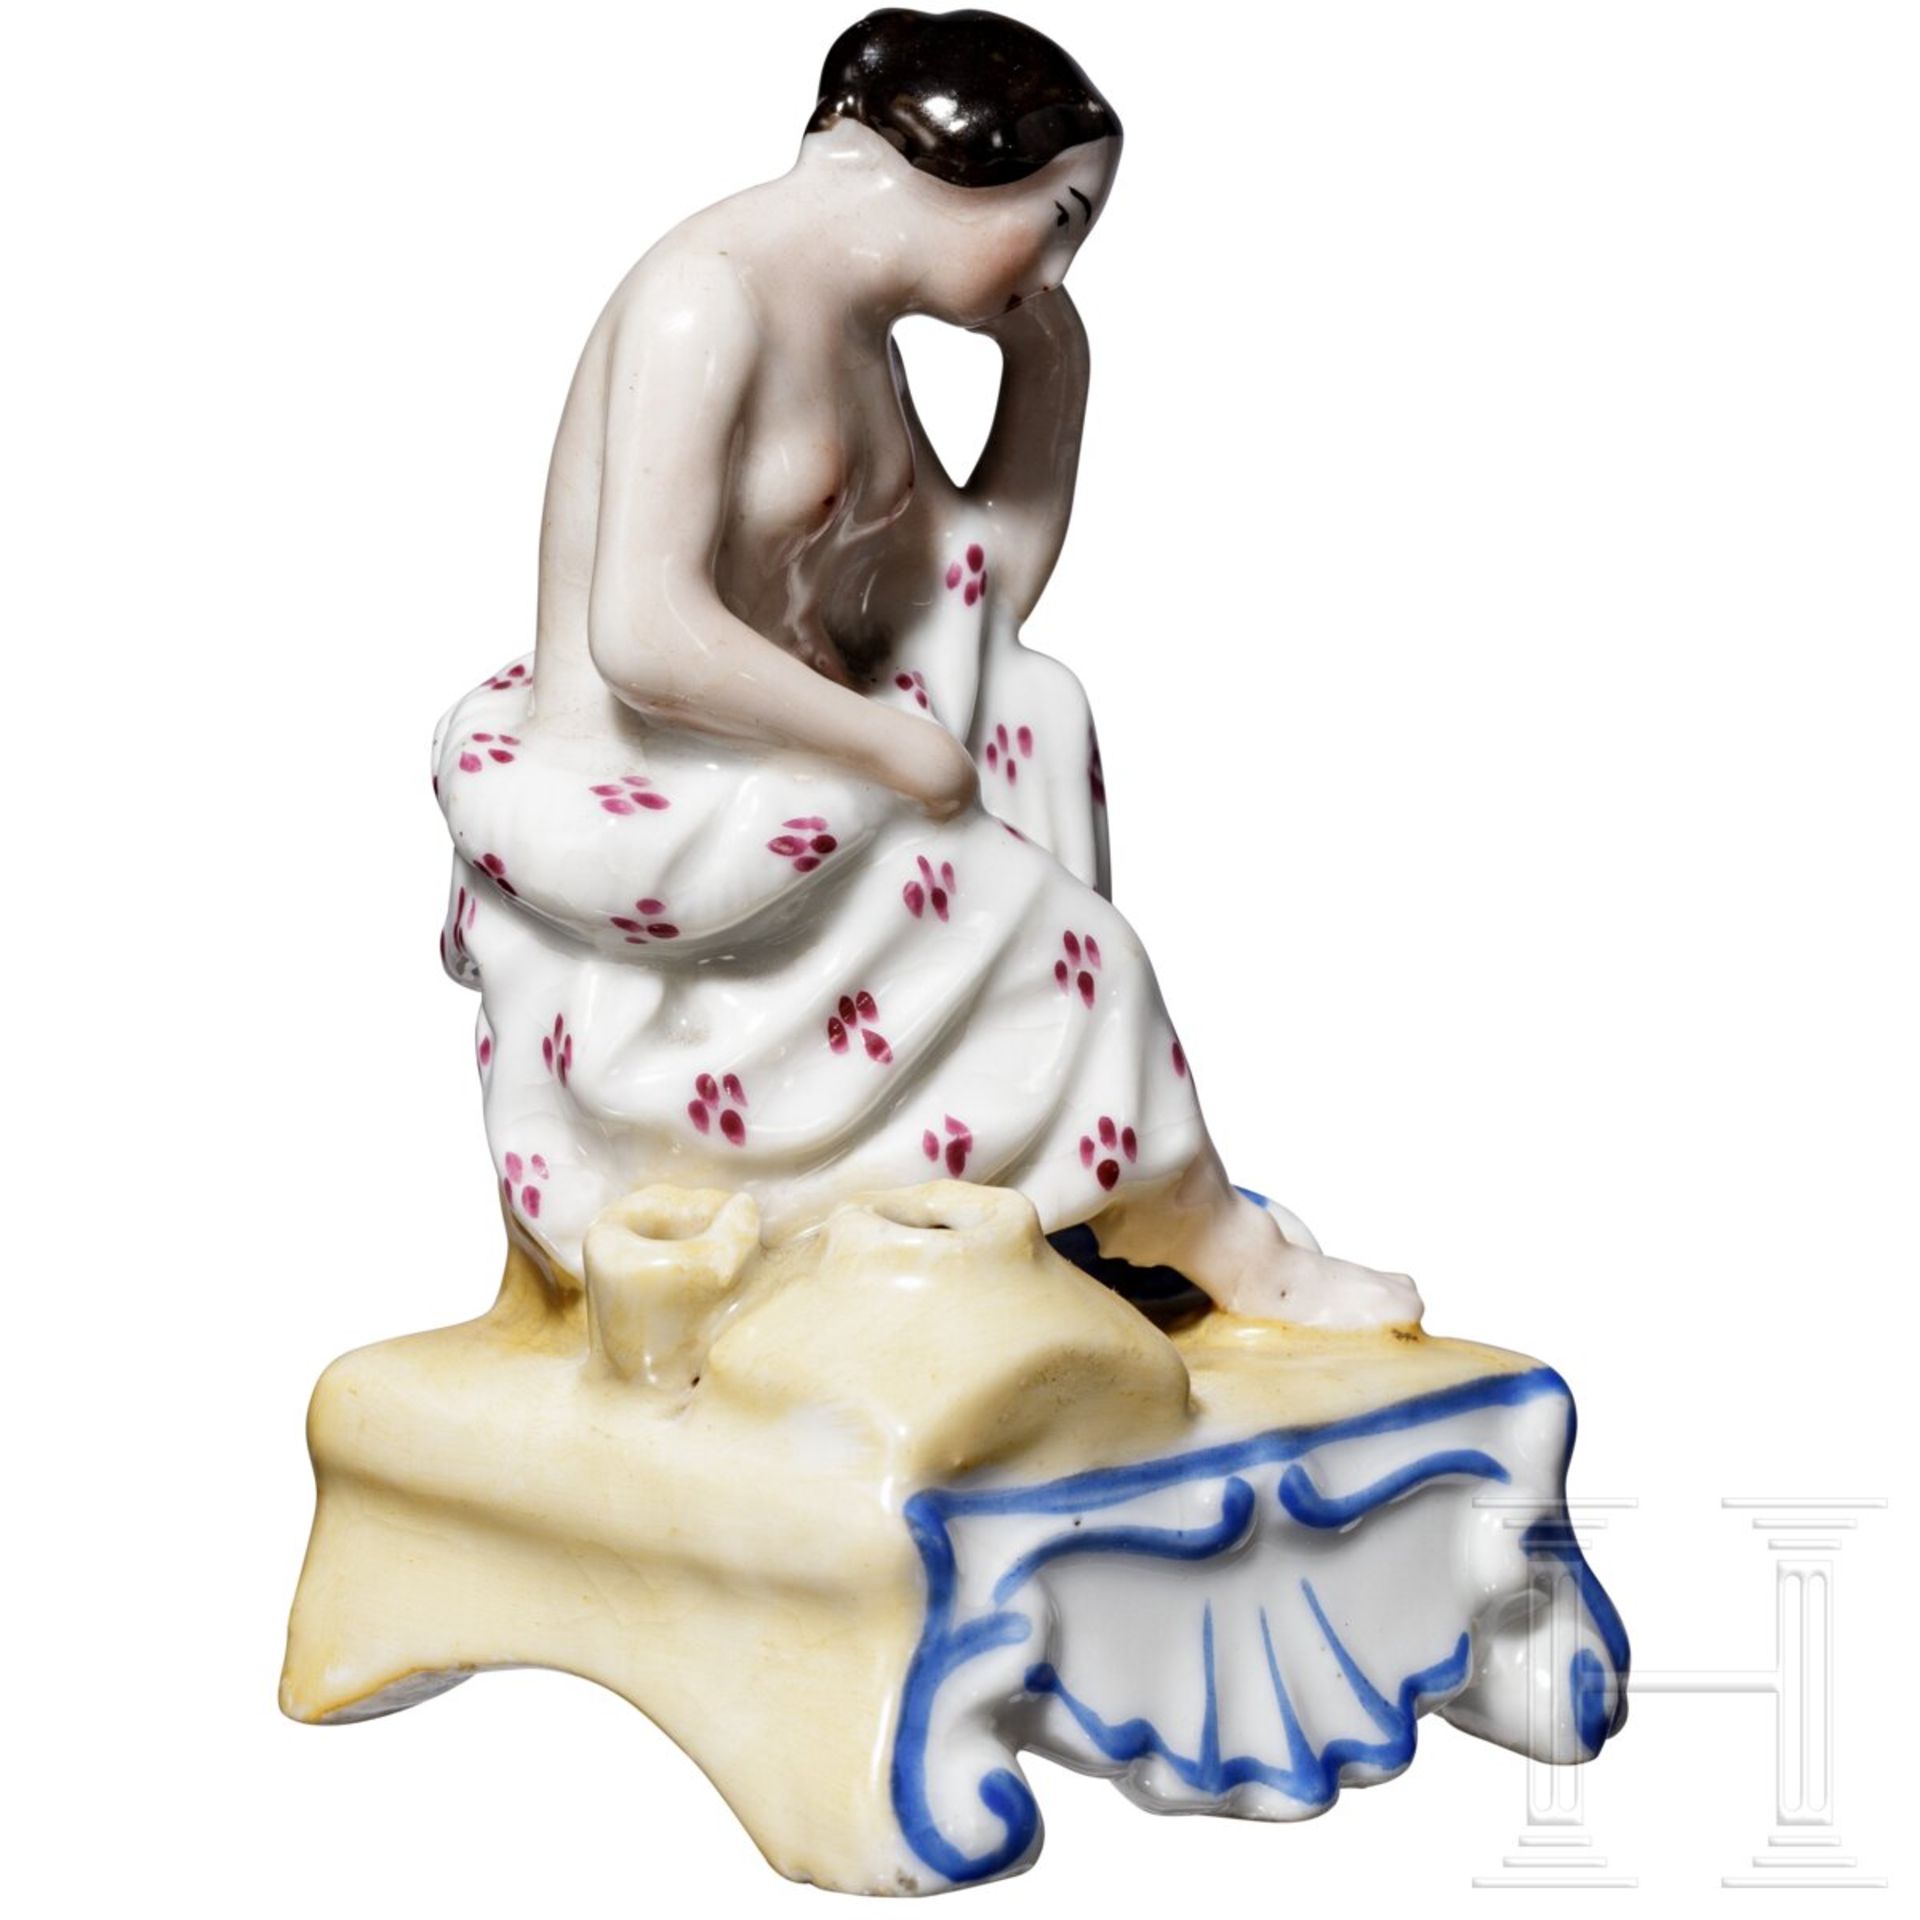 Erotische Porzellanfigur als Duftbehälter, russische Privatmanufaktur, Mitte 19. Jhdt. - Image 2 of 5